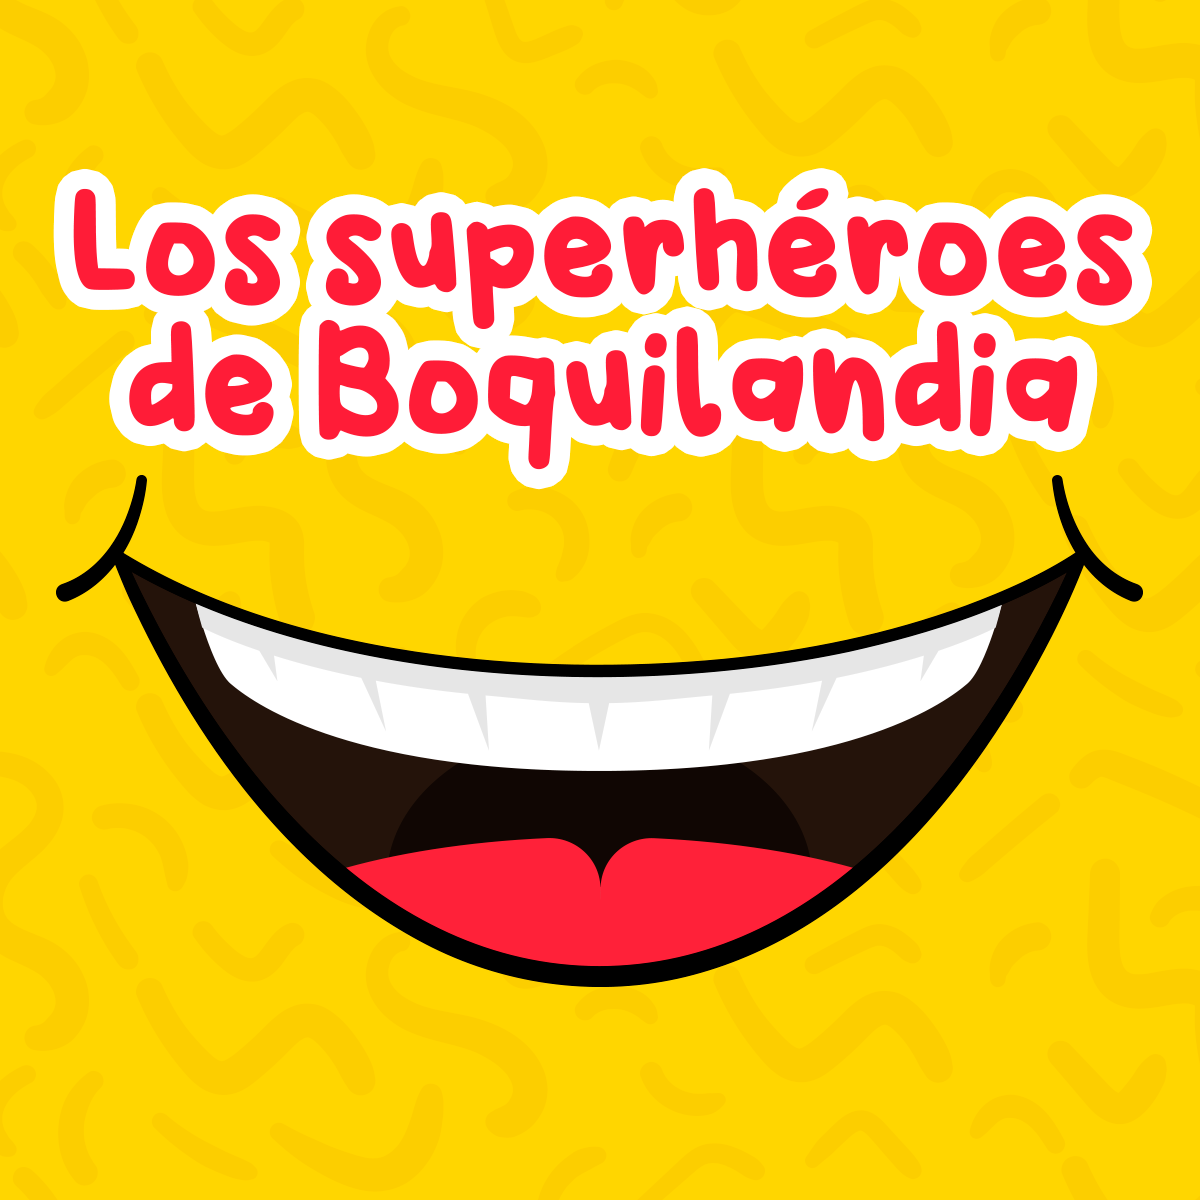 Los superhéroes de Boquilandia